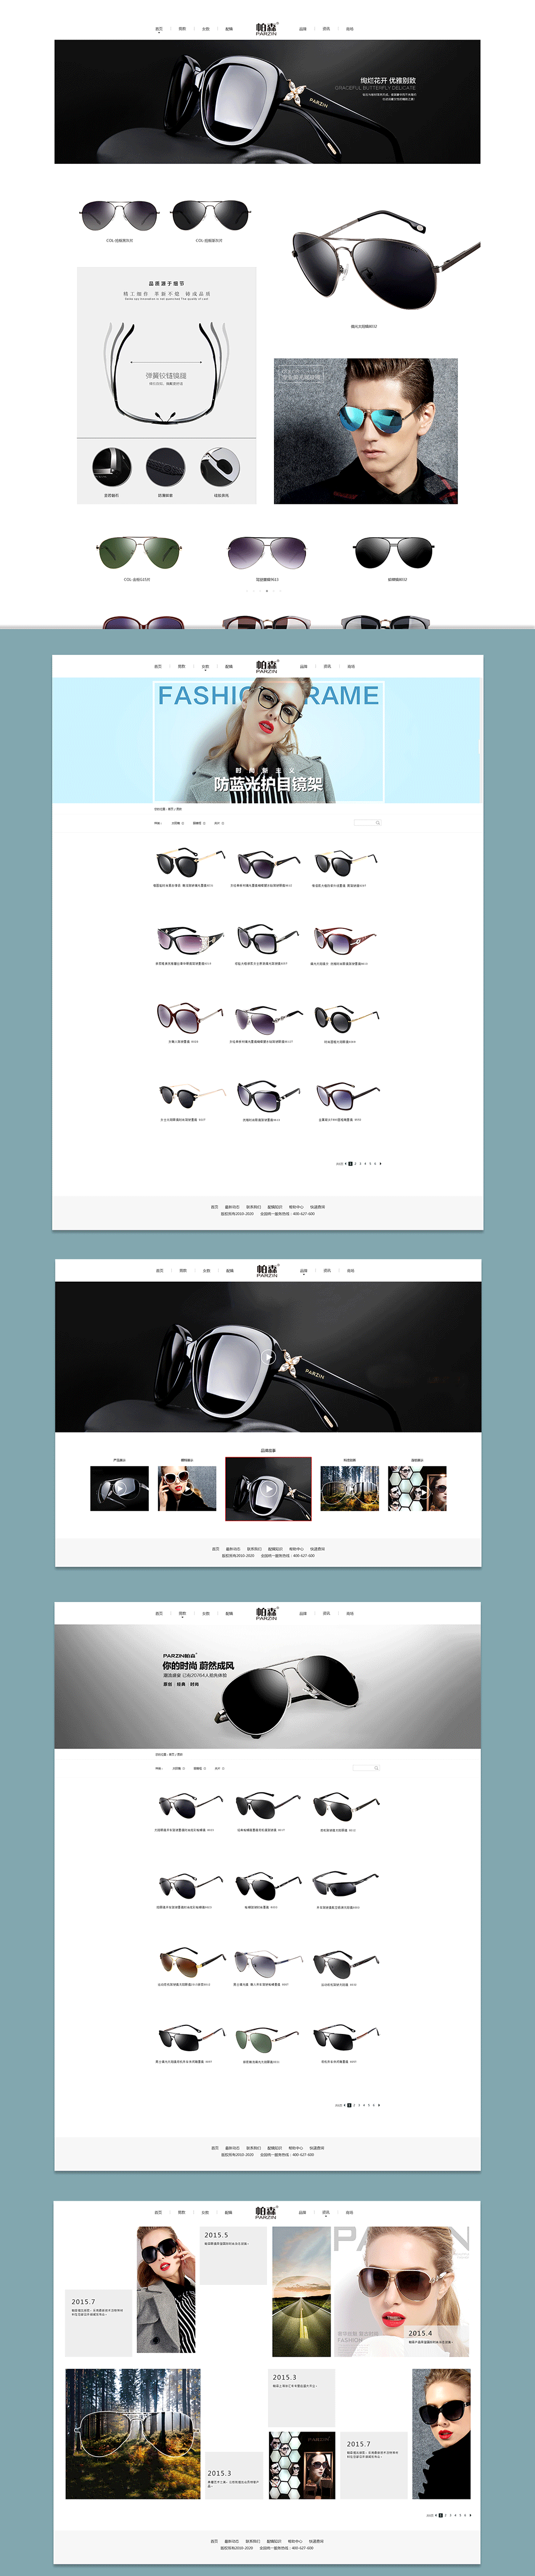 web眼镜网站界面排版布局 网页设计